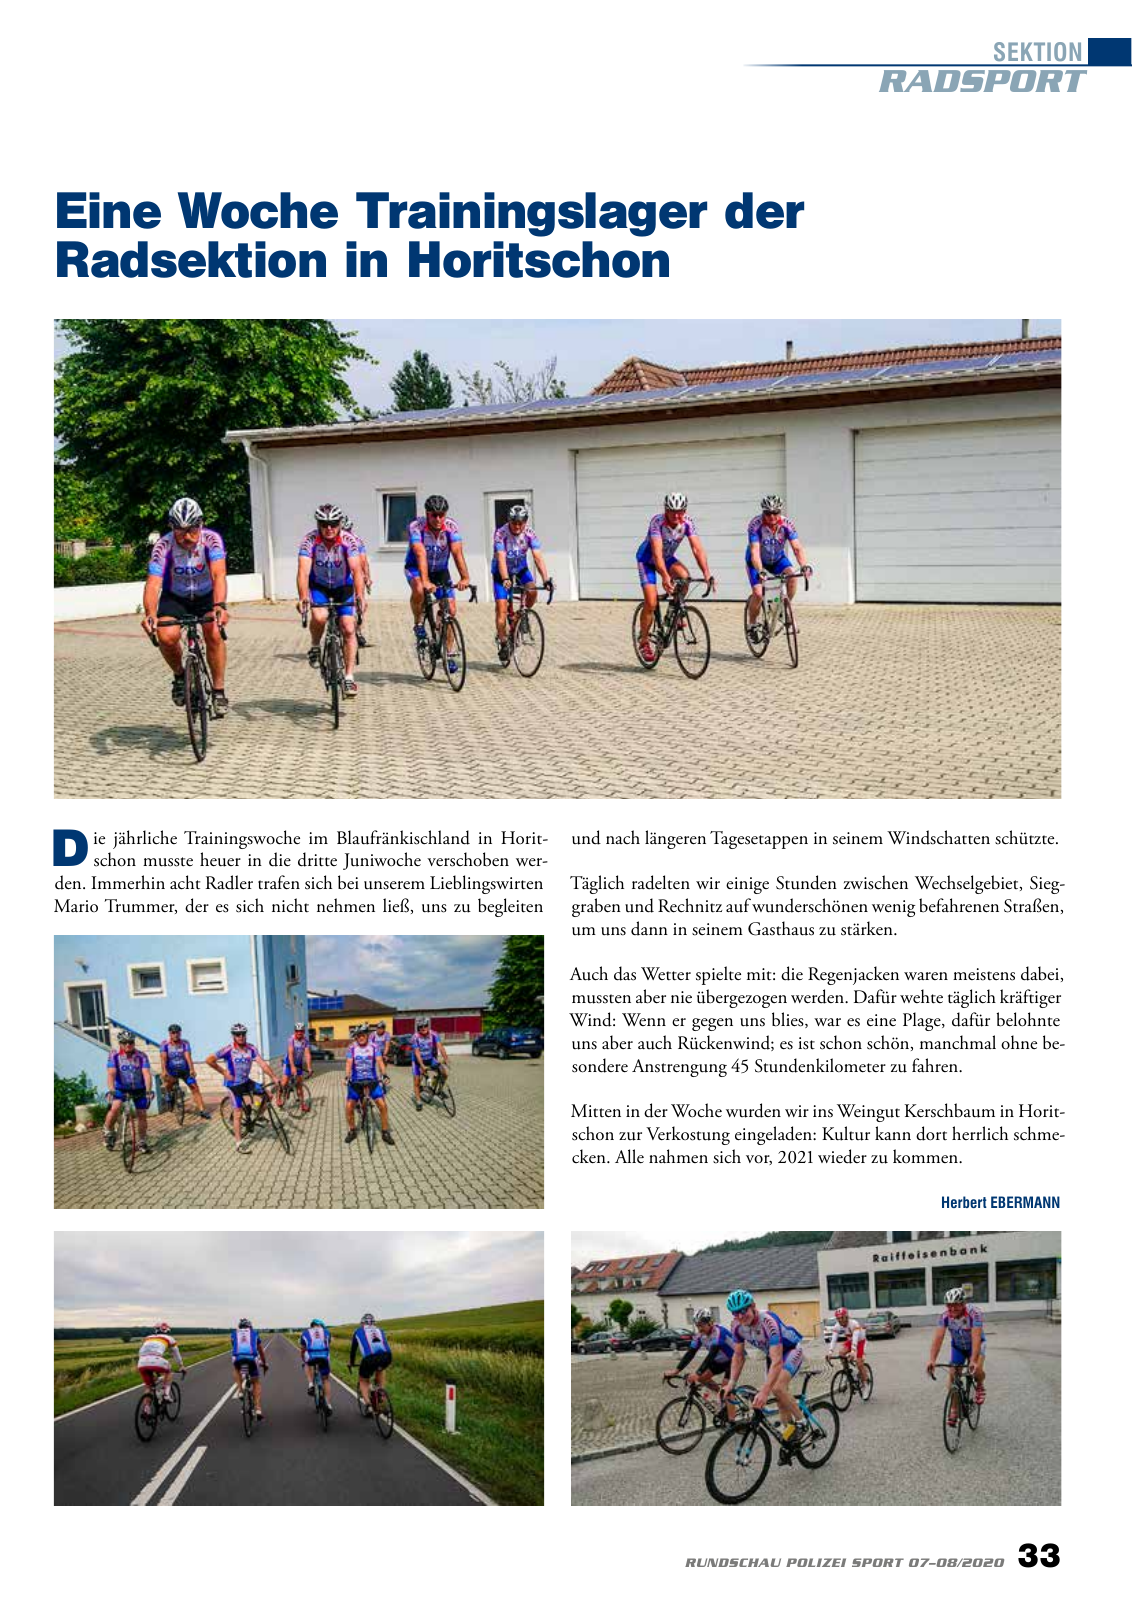 Vorschau Rundschau Polizei Sport 07-08/2020 Seite 33